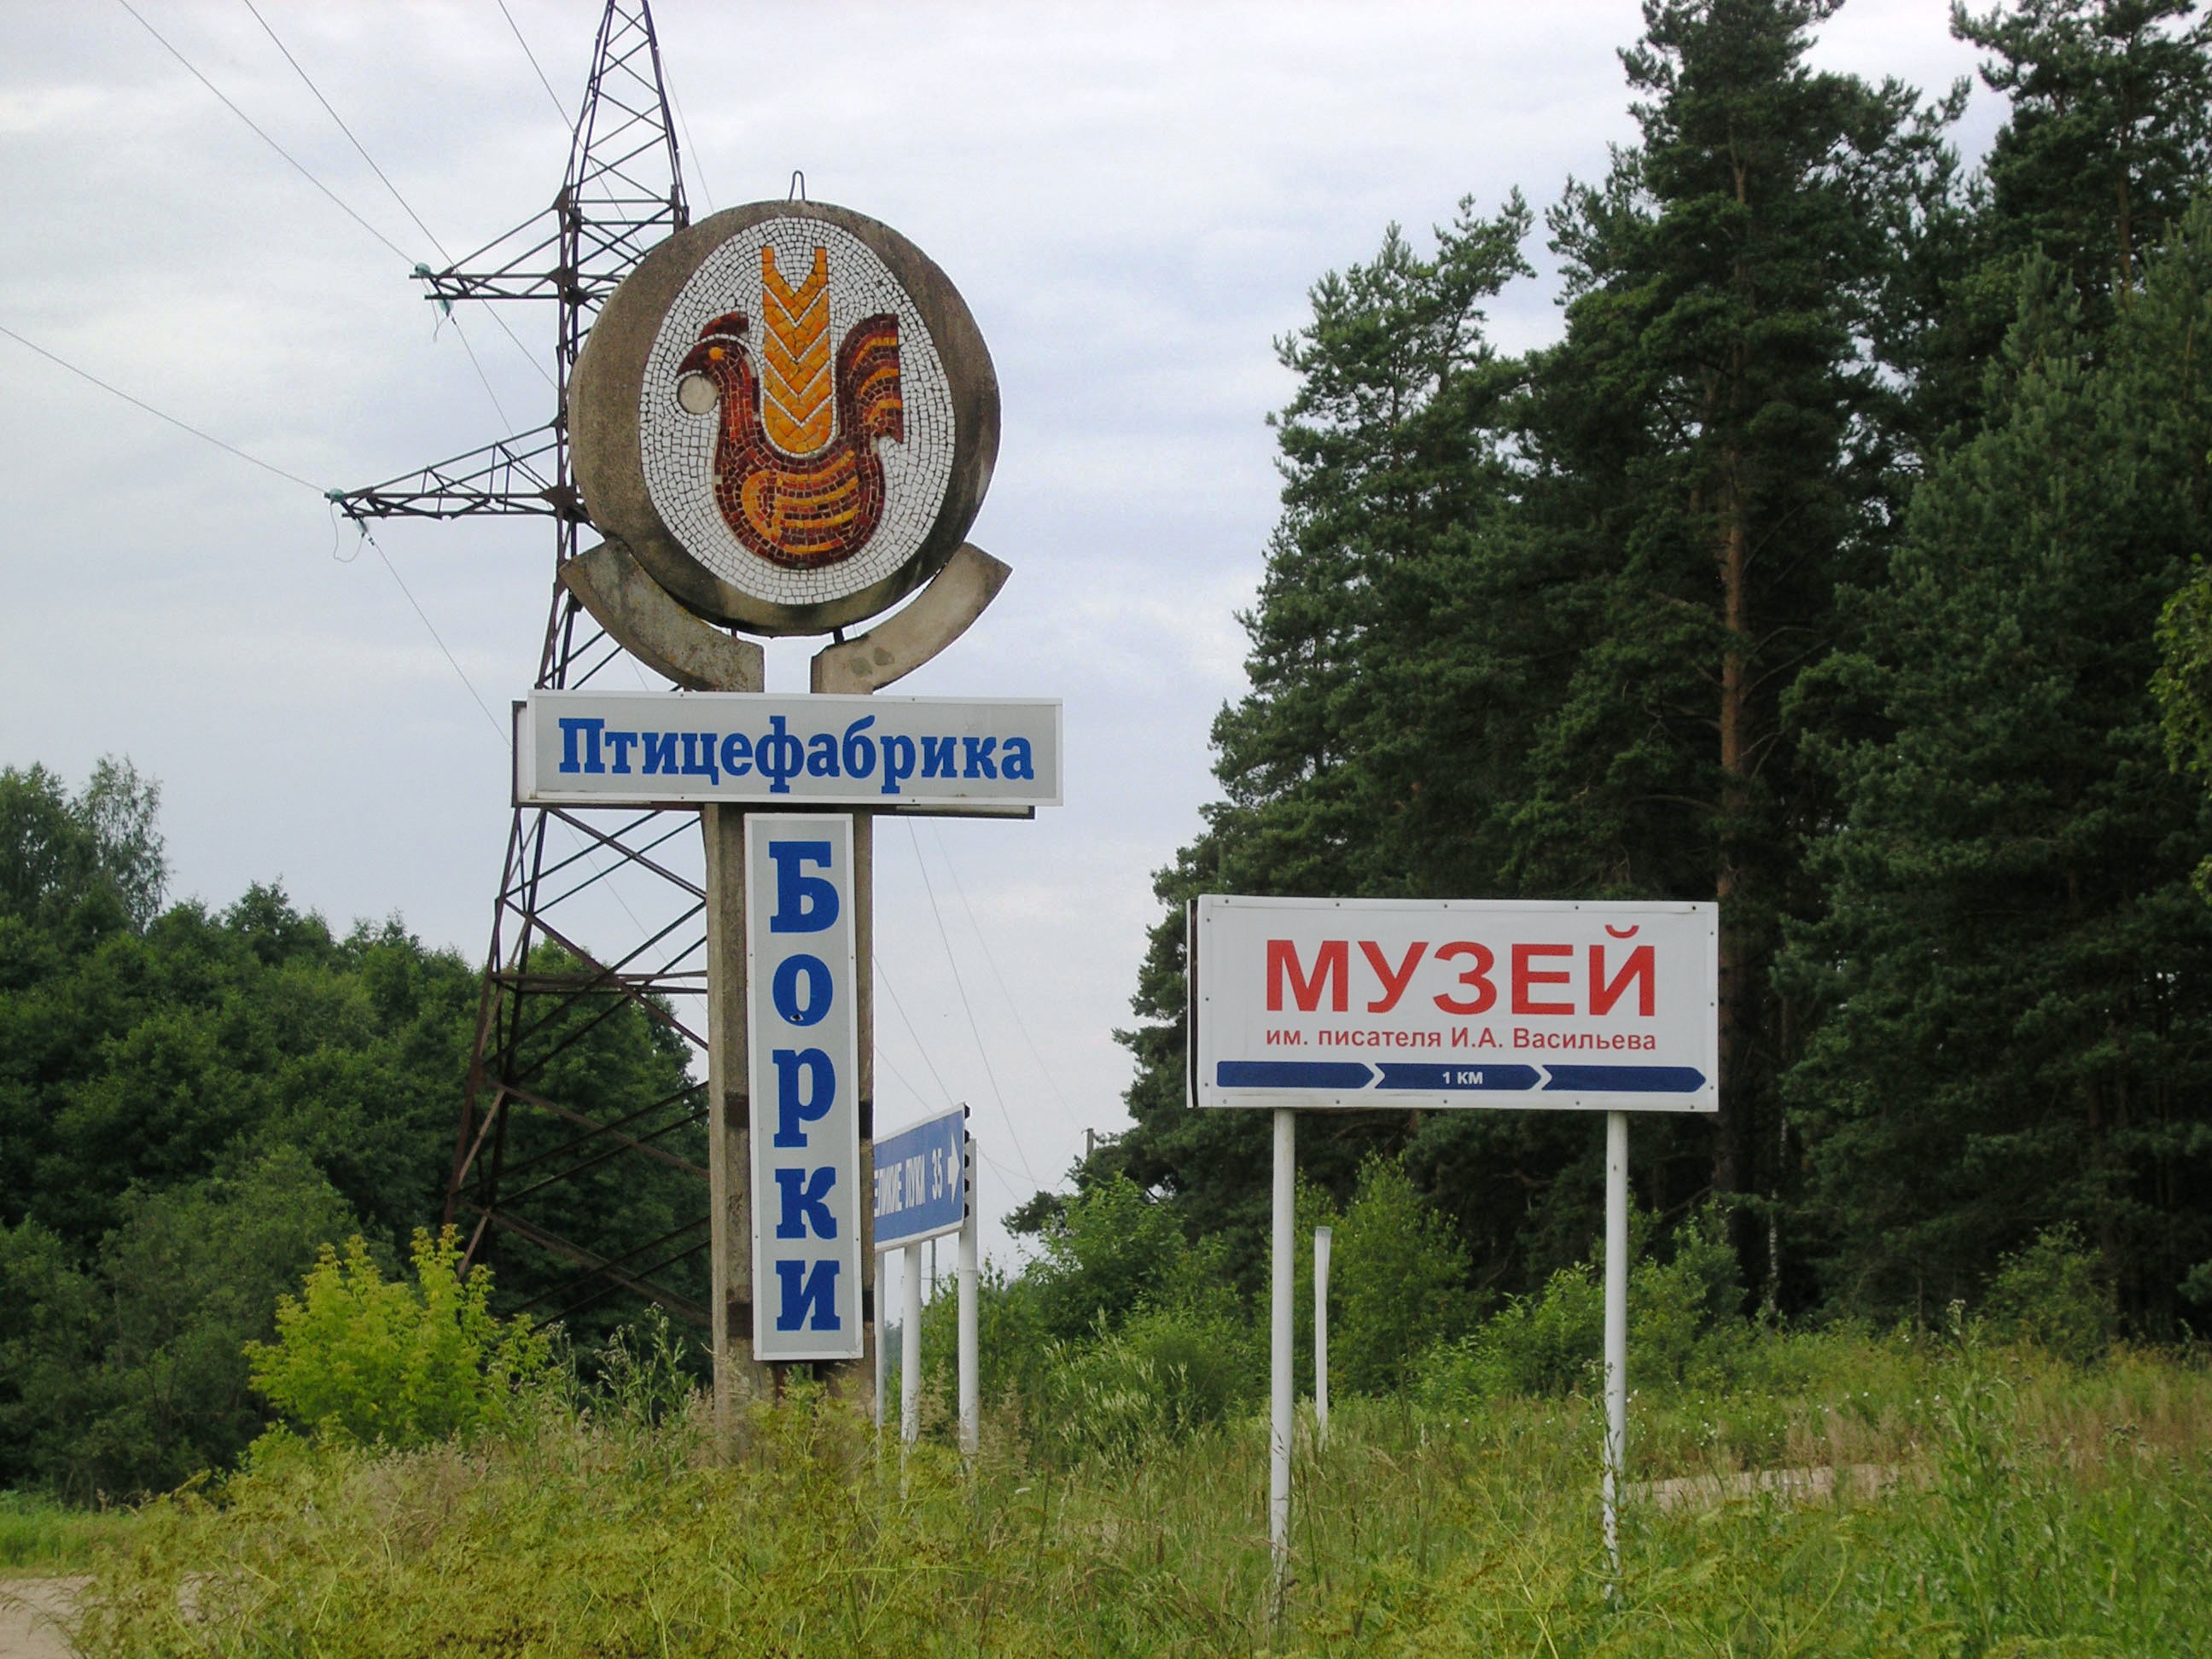 Борки, Борковская волость, Великолукский район, Псковская область.